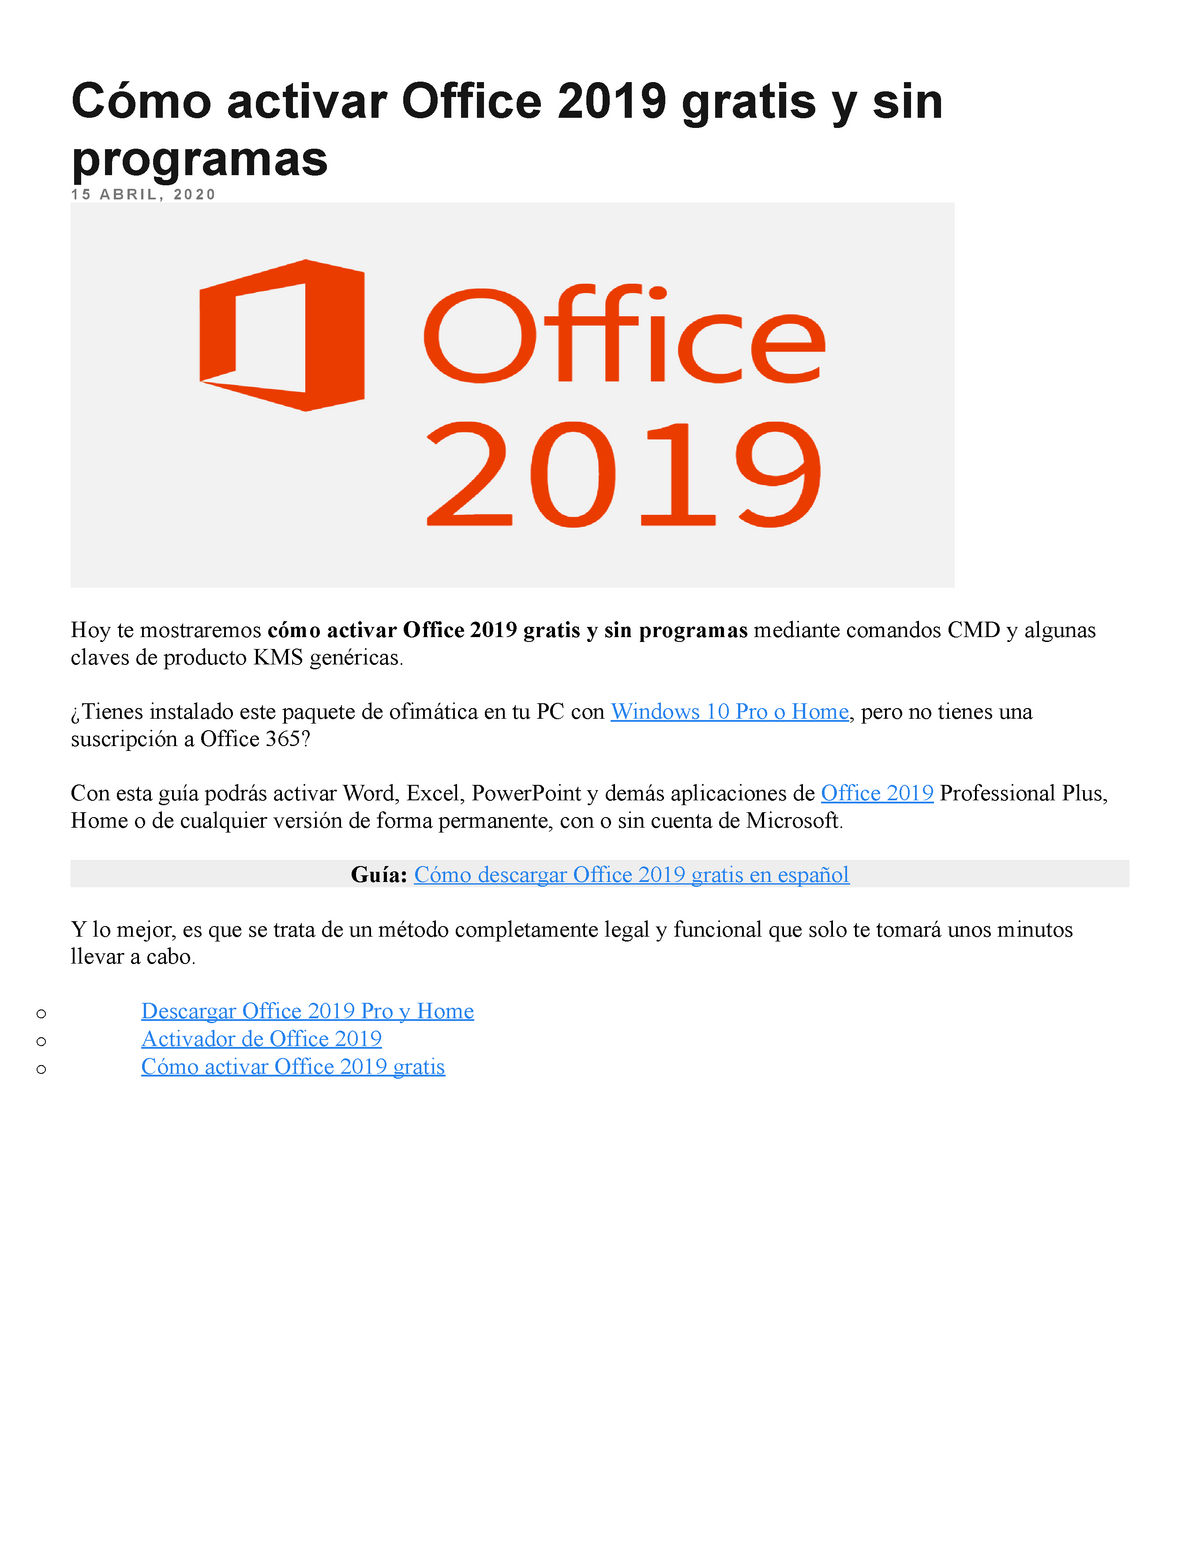 simpatía vertical ensayo Cómo activar Office 2019 gratis y sin programas - ¿Tienes instalado este  paquete de ofimática en tu - Studocu